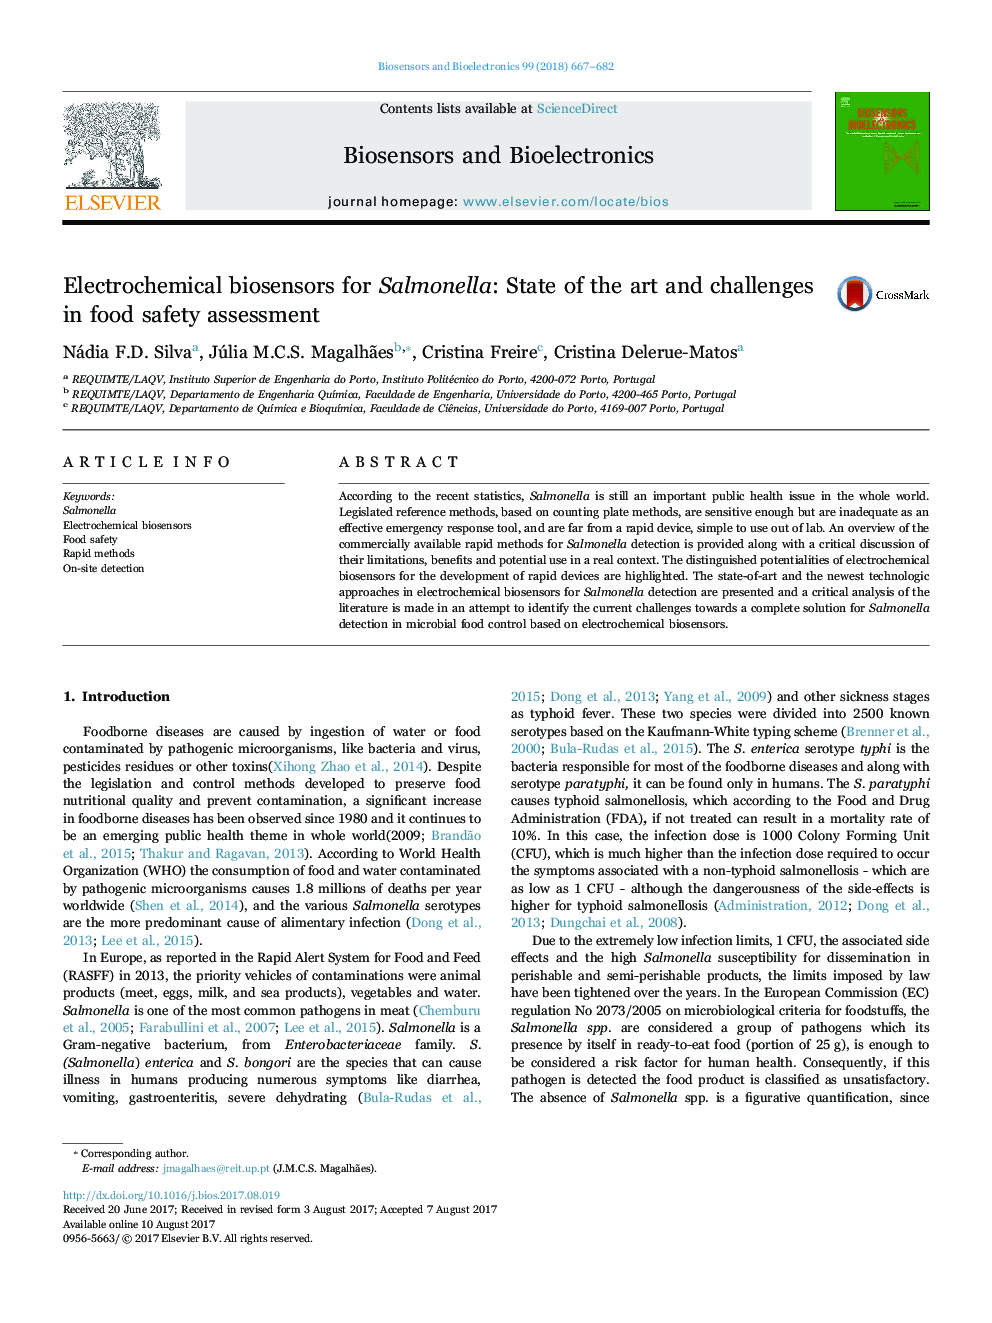 بیوسنسورهای الکتروشیمیایی برای سالمونلا: وضعیت و چالش ها در ارزیابی ایمنی مواد غذایی